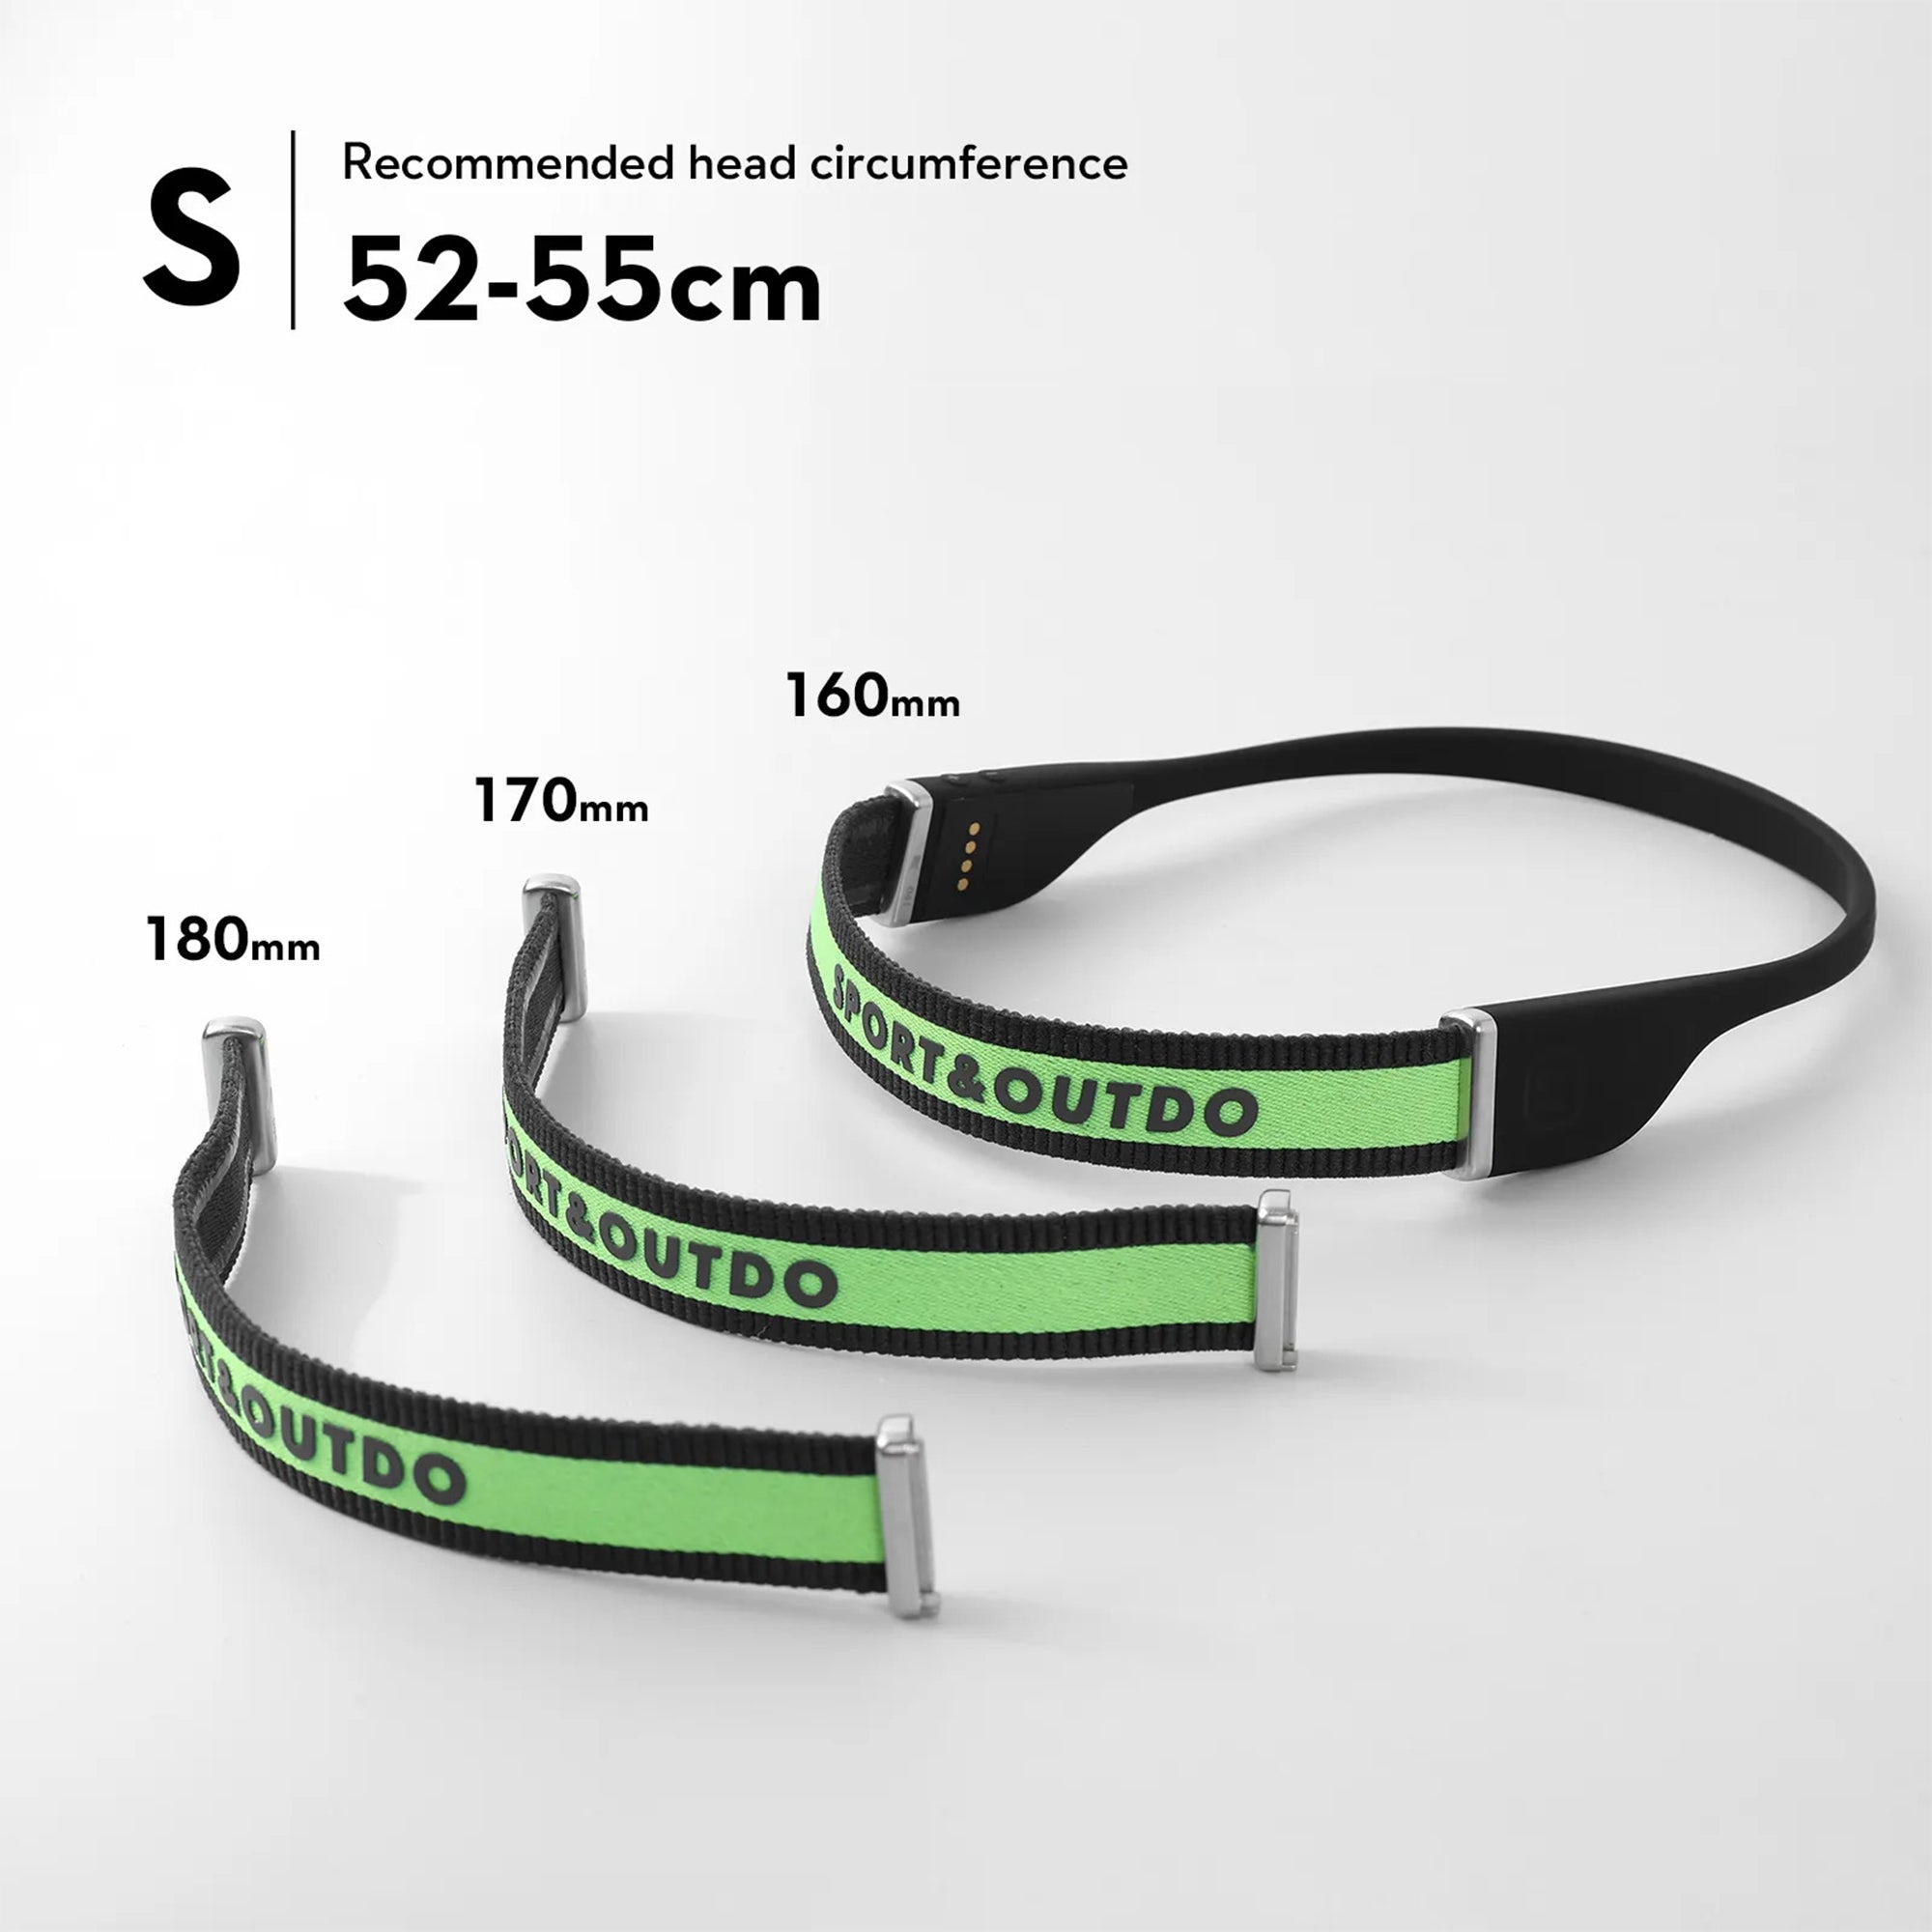 Mifo SportSet - Sweat Resistant Earphones with Comfort Fit Headband